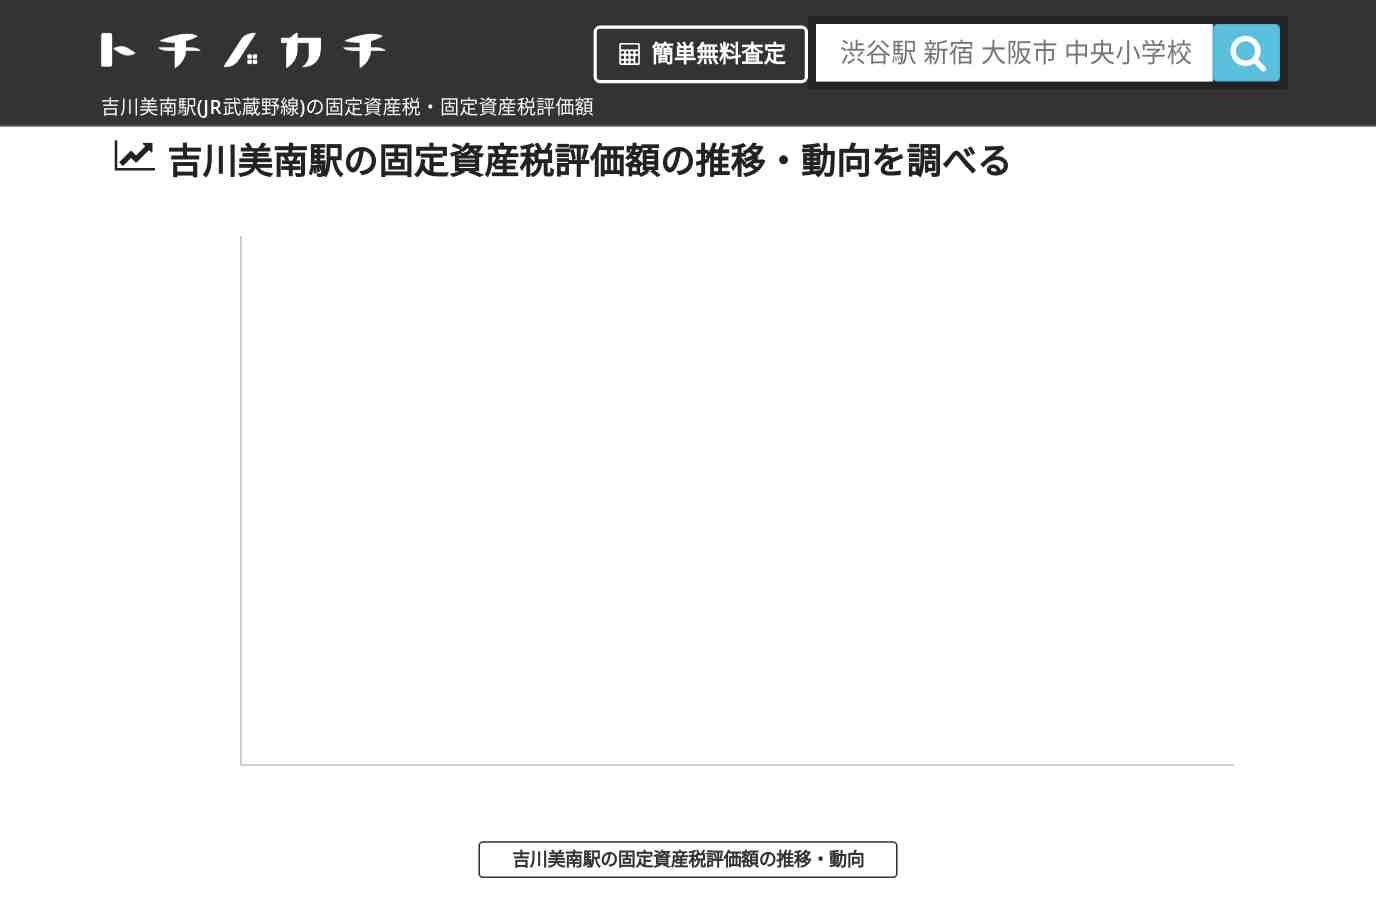 吉川美南駅(JR武蔵野線)の固定資産税・固定資産税評価額 | トチノカチ